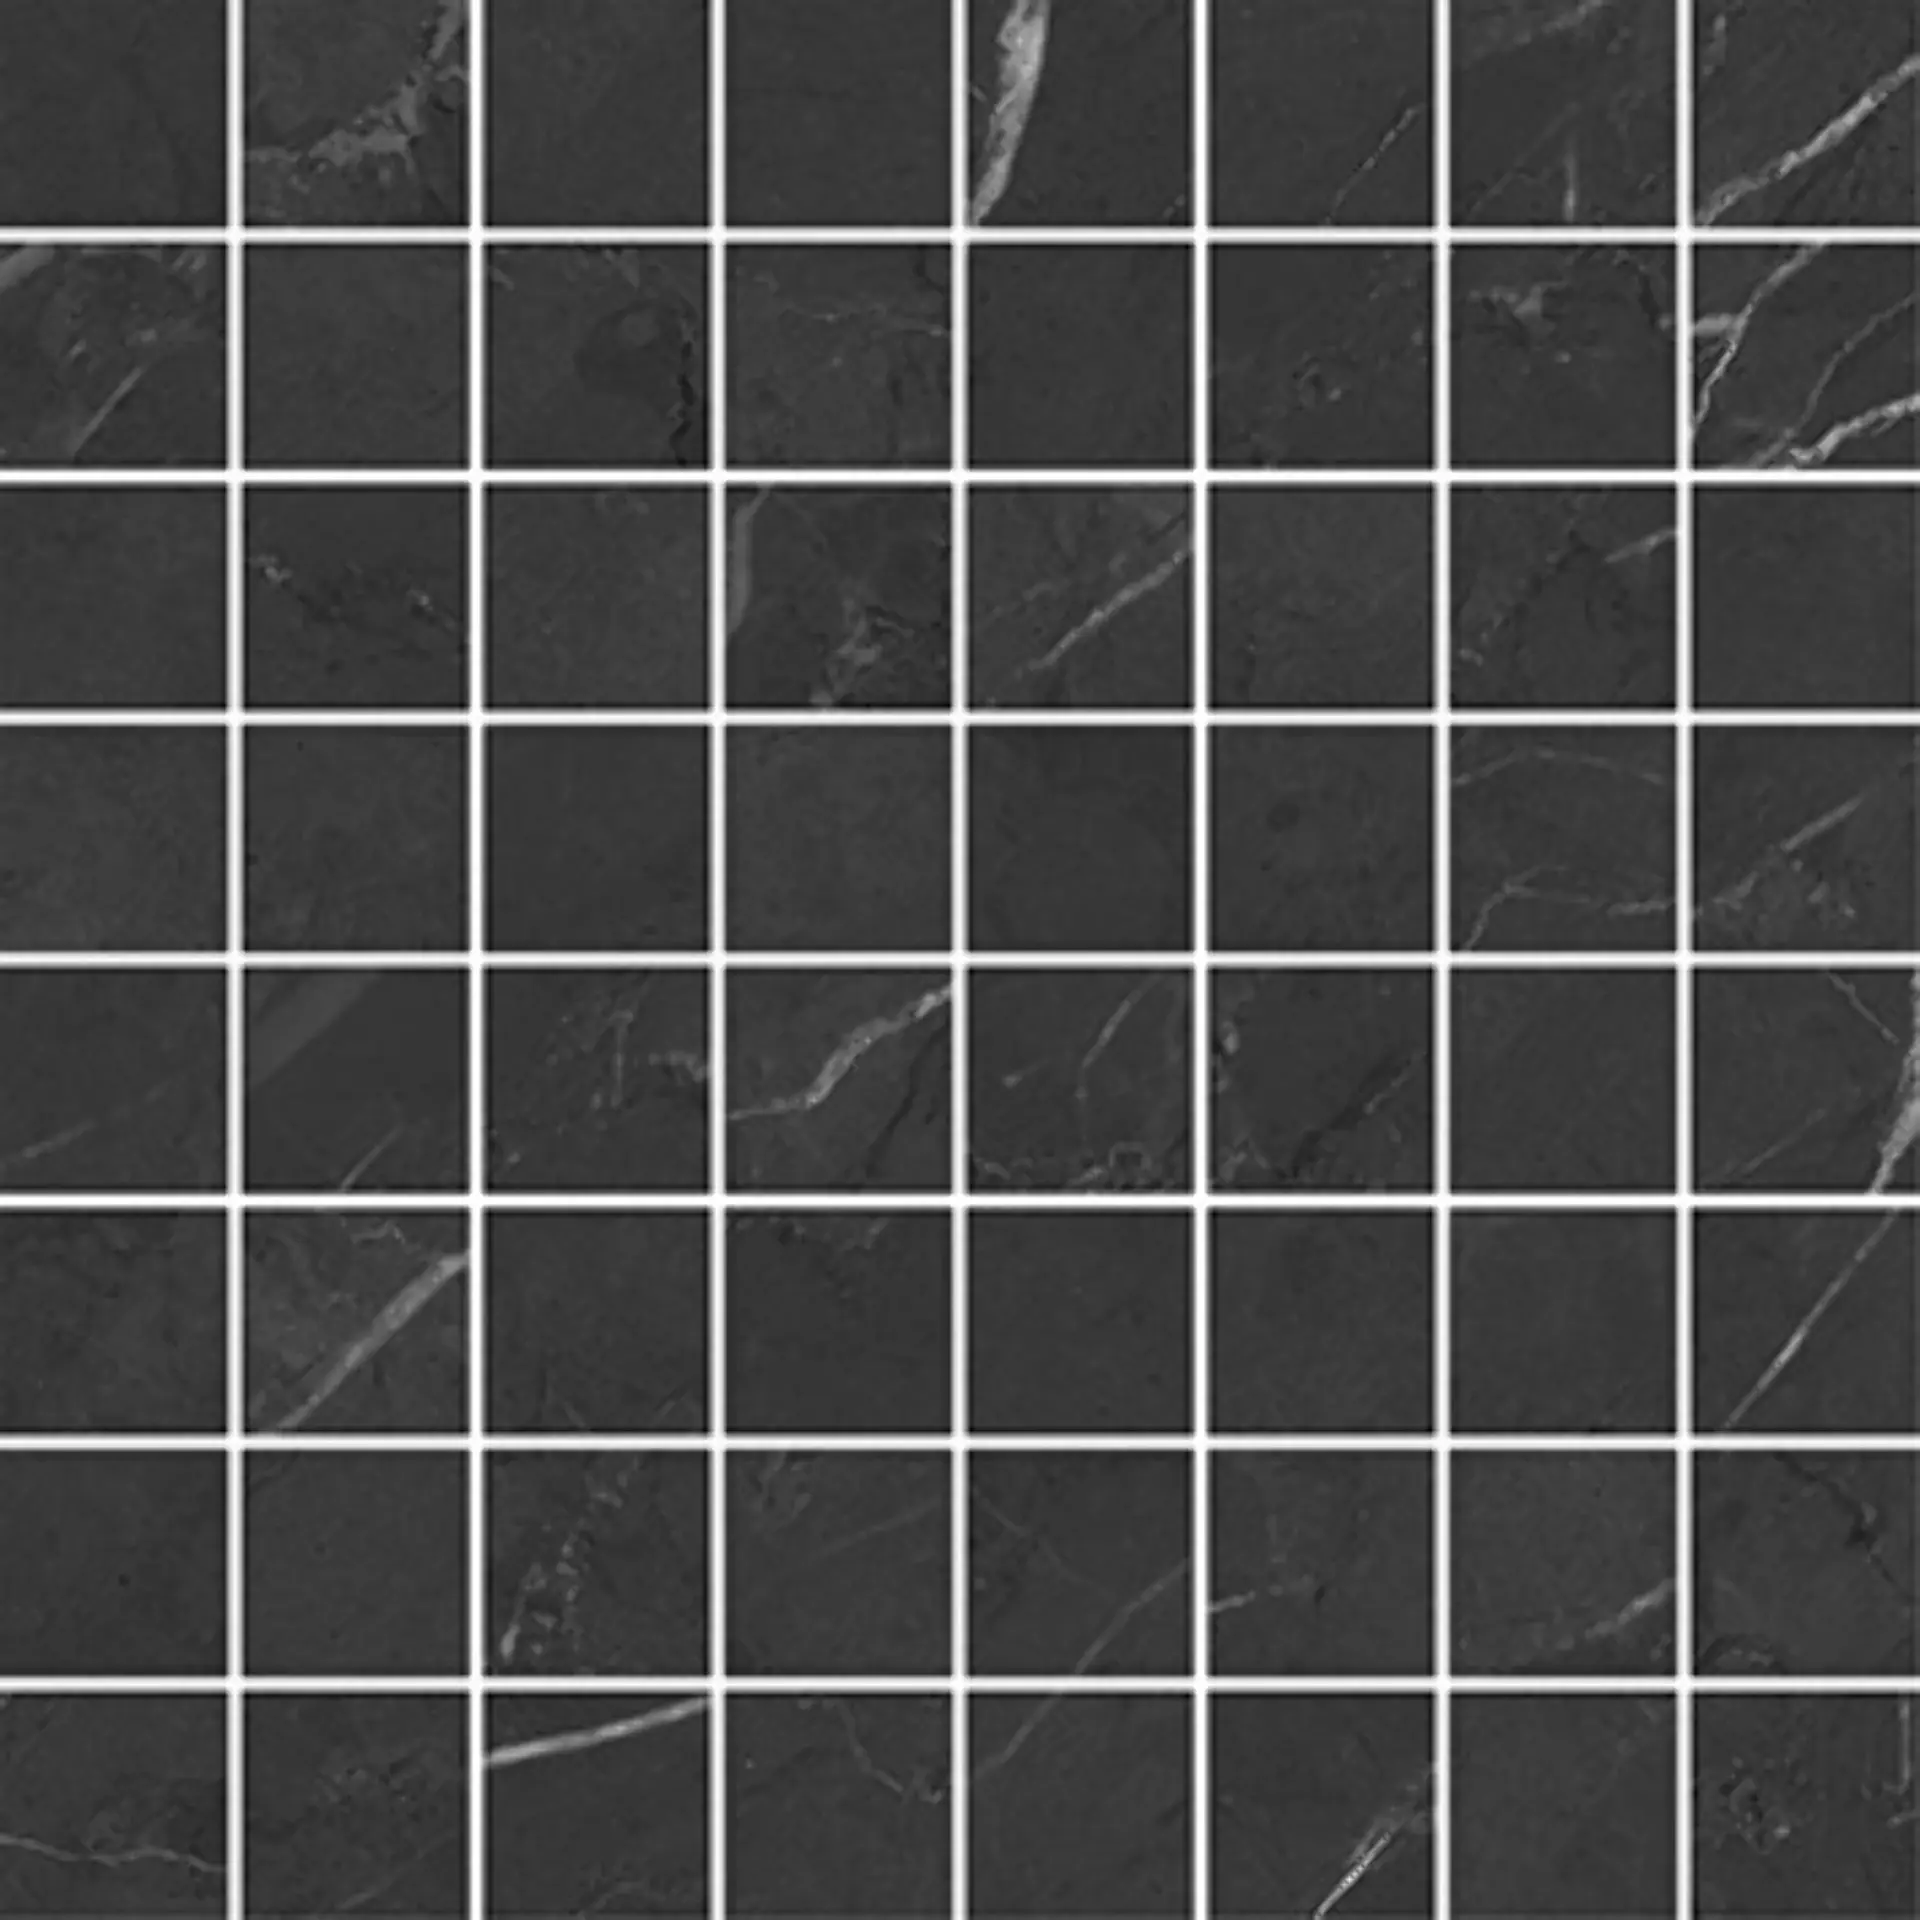 Wandfliese,Bodenfliese Villeroy & Boch Victorian Black Polished Black 2005-MK9P poliert 3,7x3,7cm Mosaik (3,7x3,7) rektifiziert 9mm